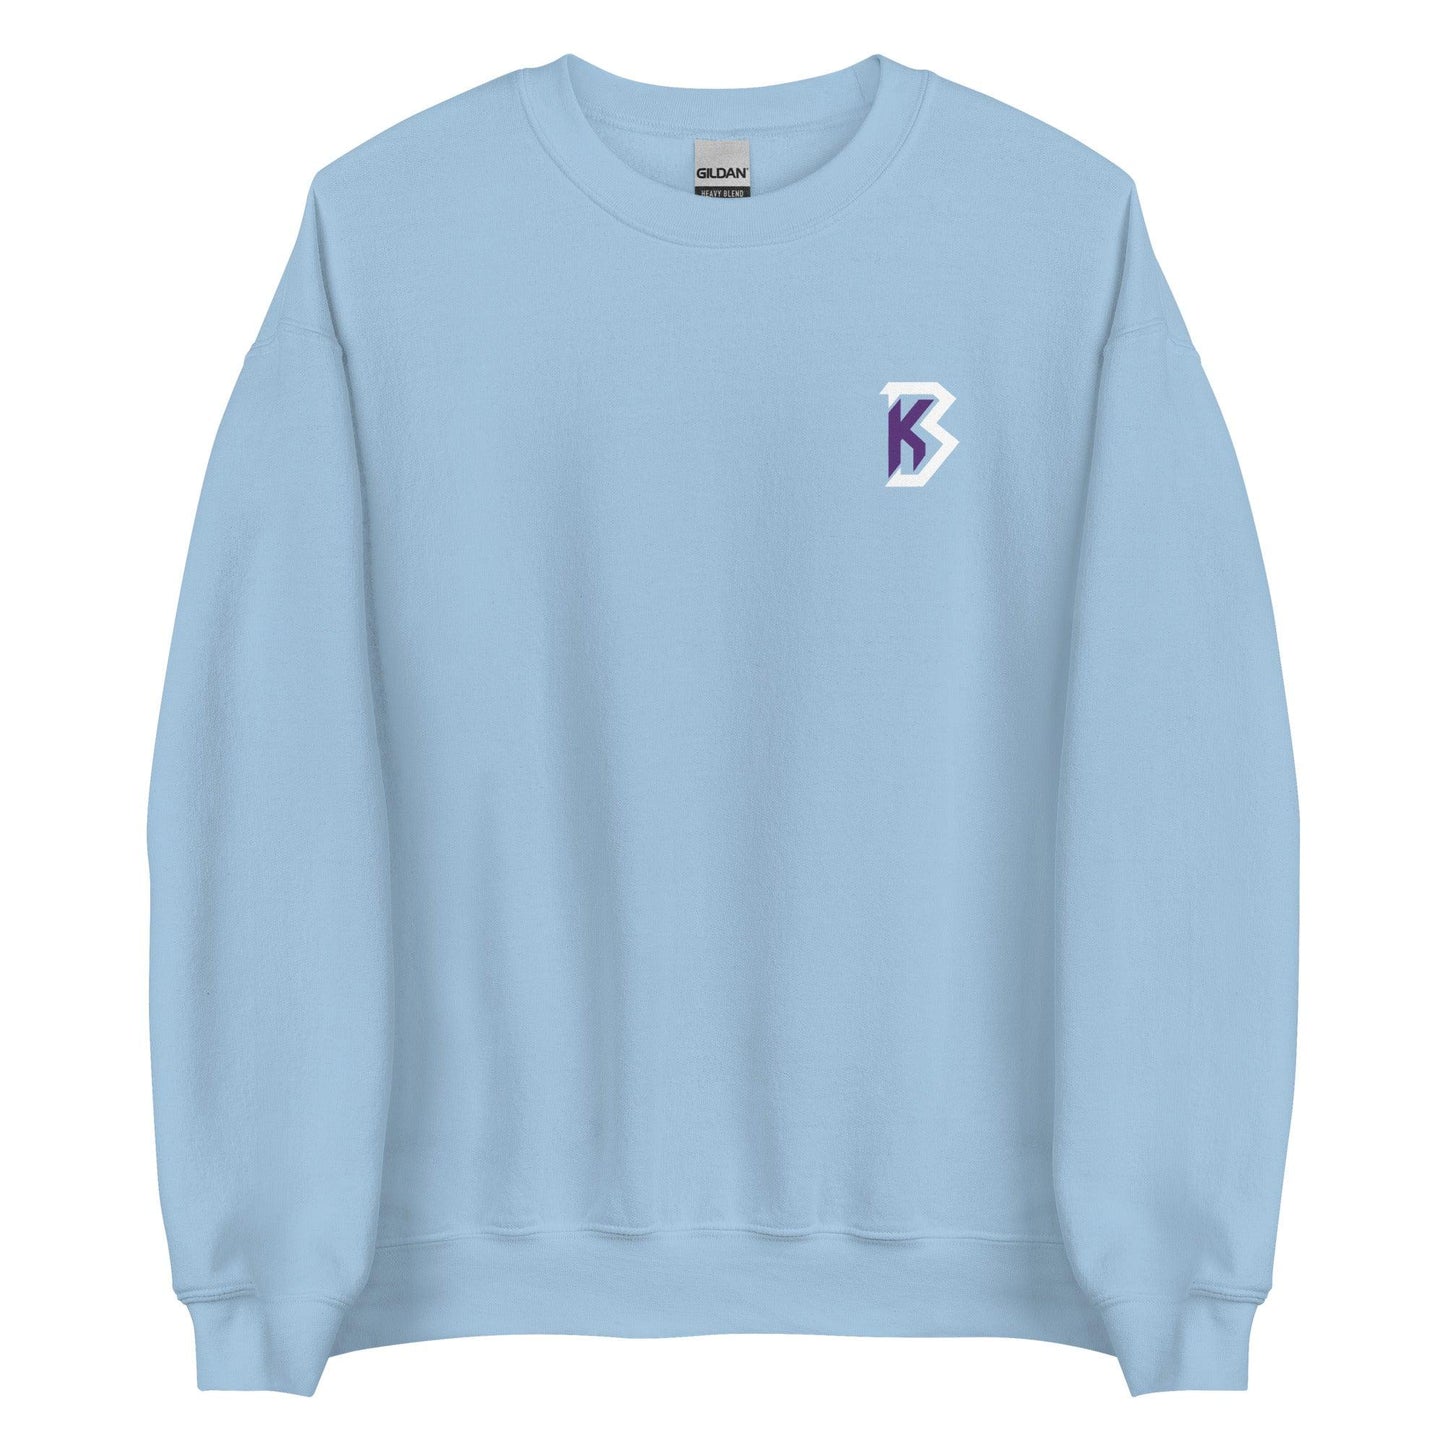 Kendall Blue "Essential" Sweatshirt - Fan Arch